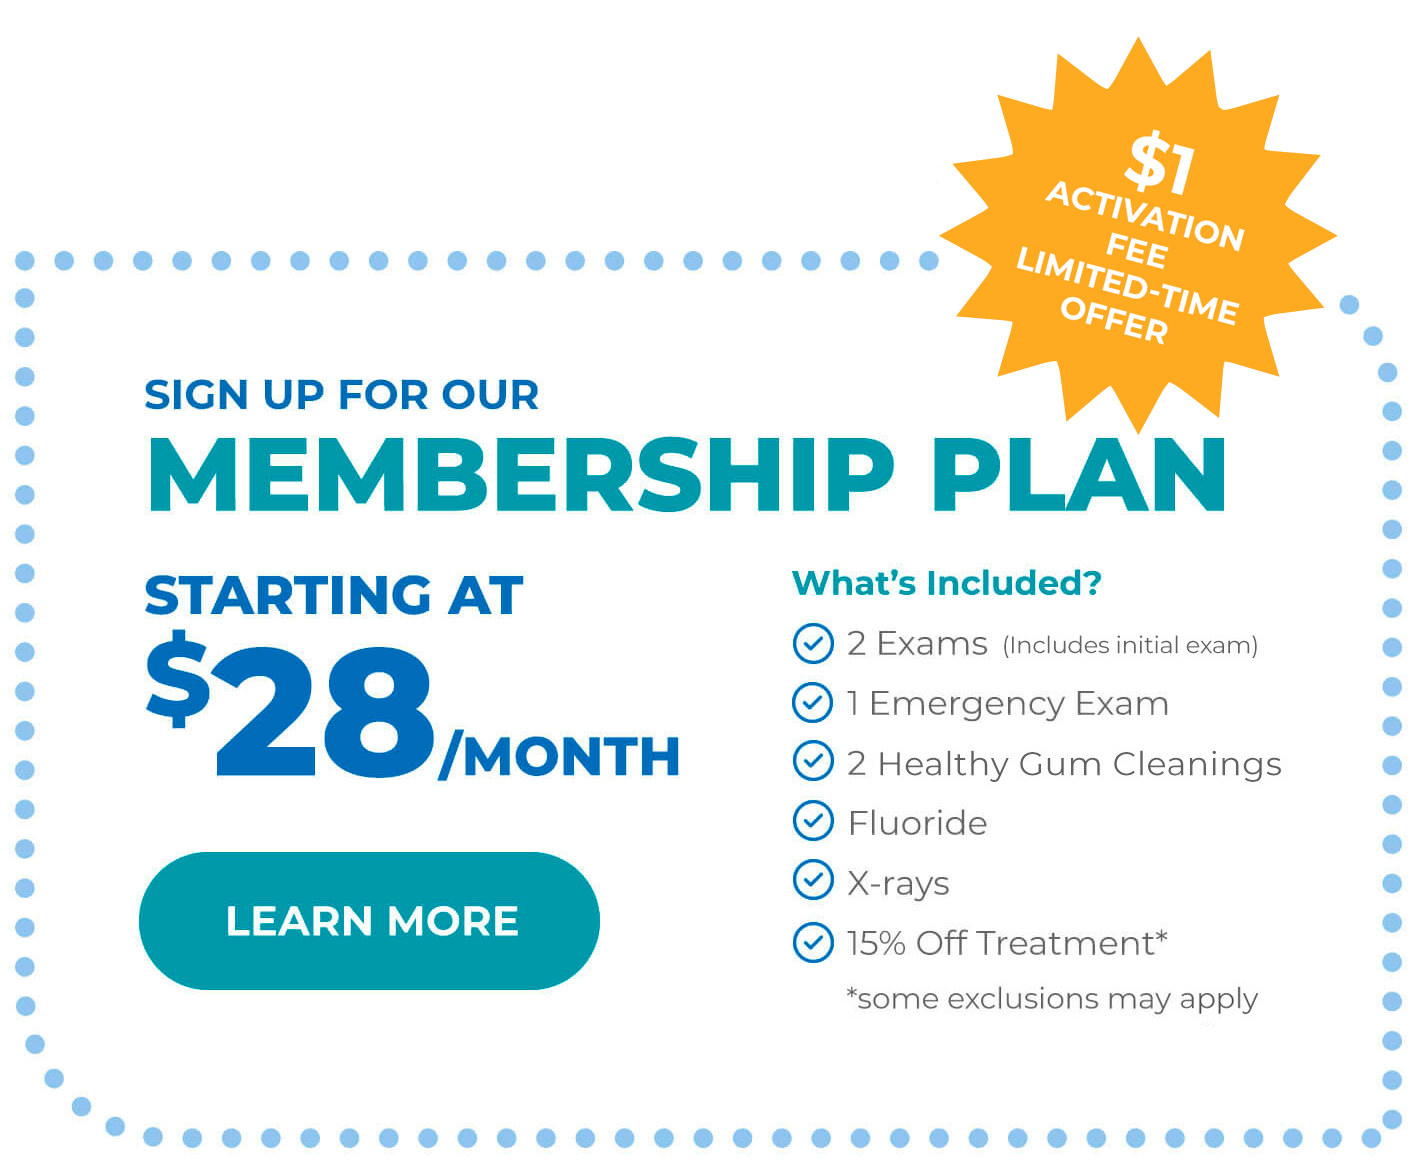 Dental membership plan starting at $28/month